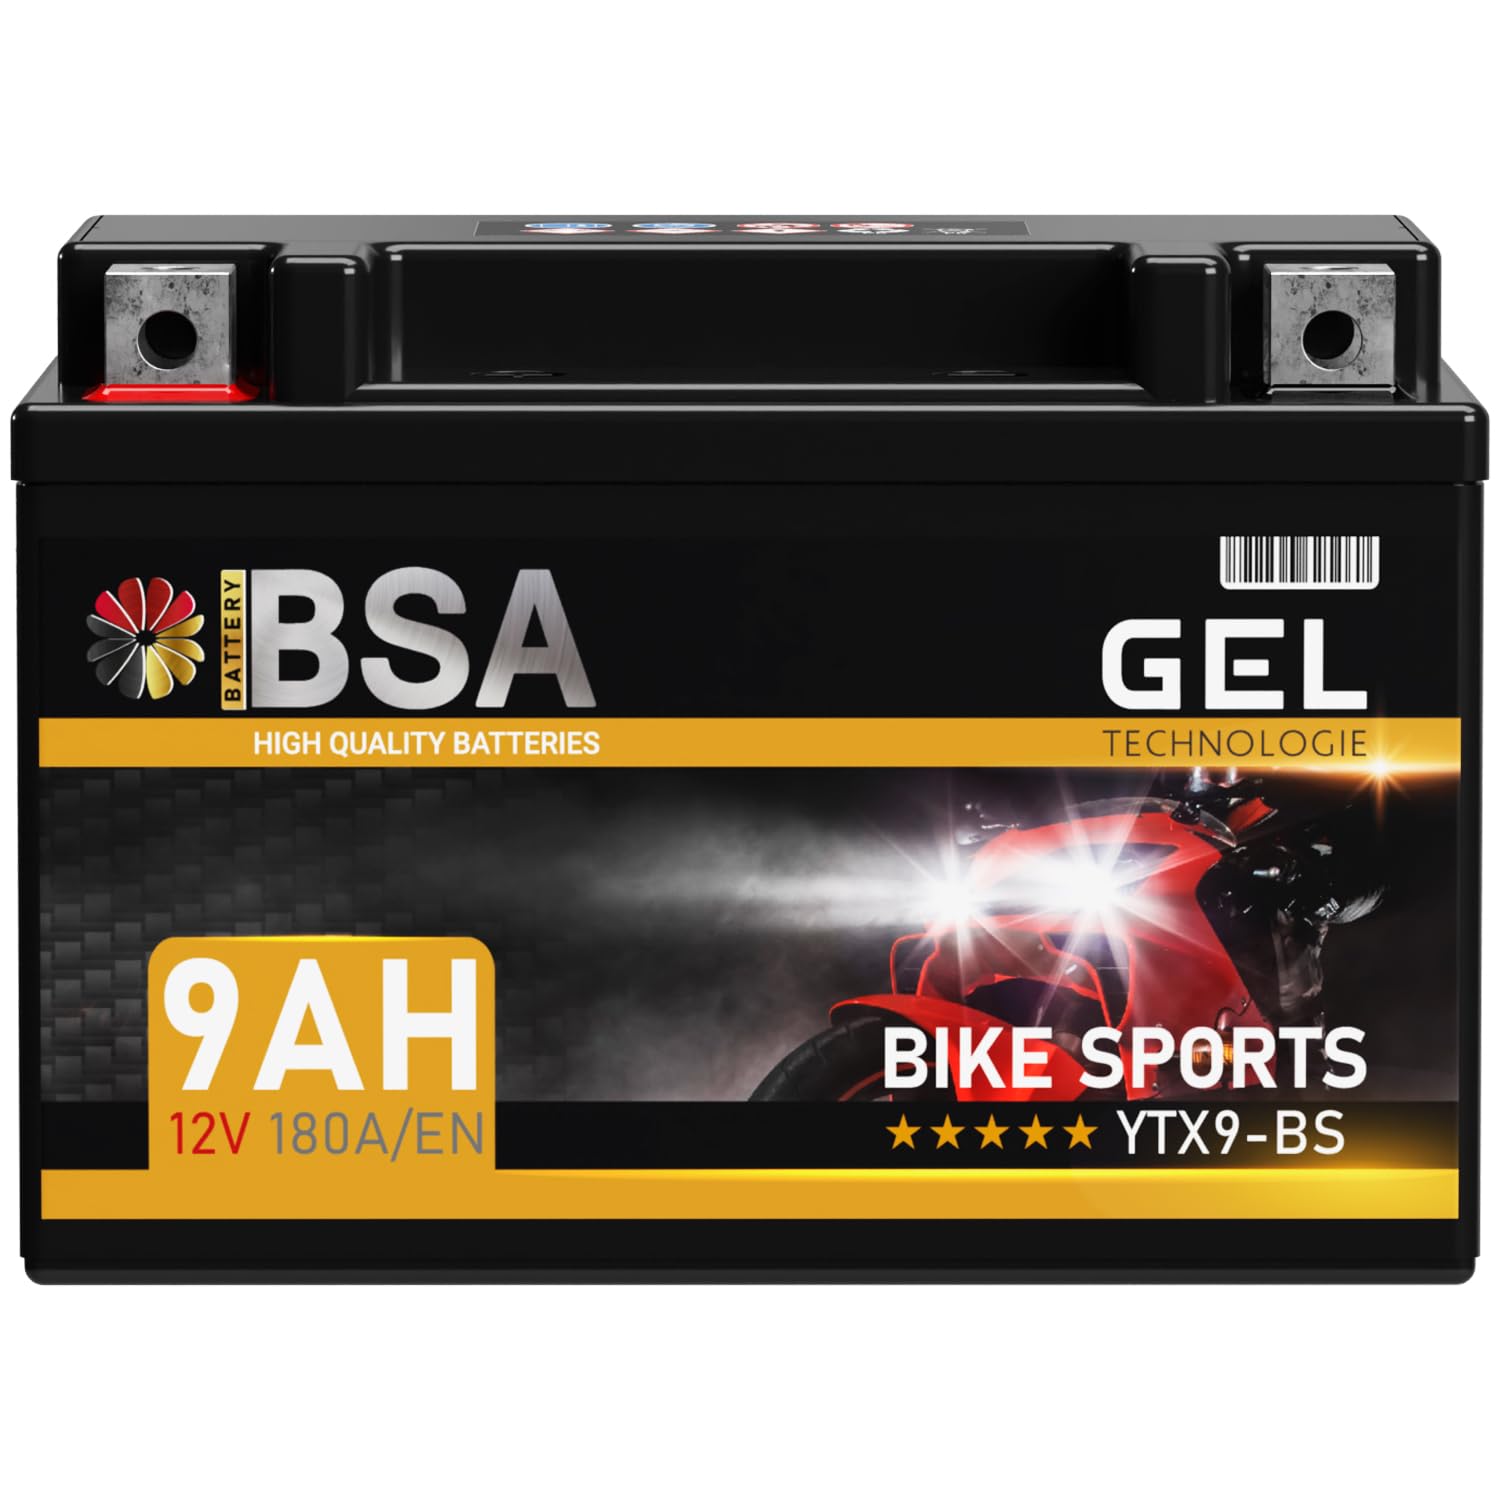 BSA YTX9-BS GEL Motorradbatterie 12V 9Ah 180A/EN Batterie doppelte Lebensdauer entspricht 50812 CTX9-BS ETX9-BS GTX9-BS vorgeladen auslaufsicher wartungsfrei ersetzt 8Ah von BSA BATTERY HIGH QUALITY BATTERIES